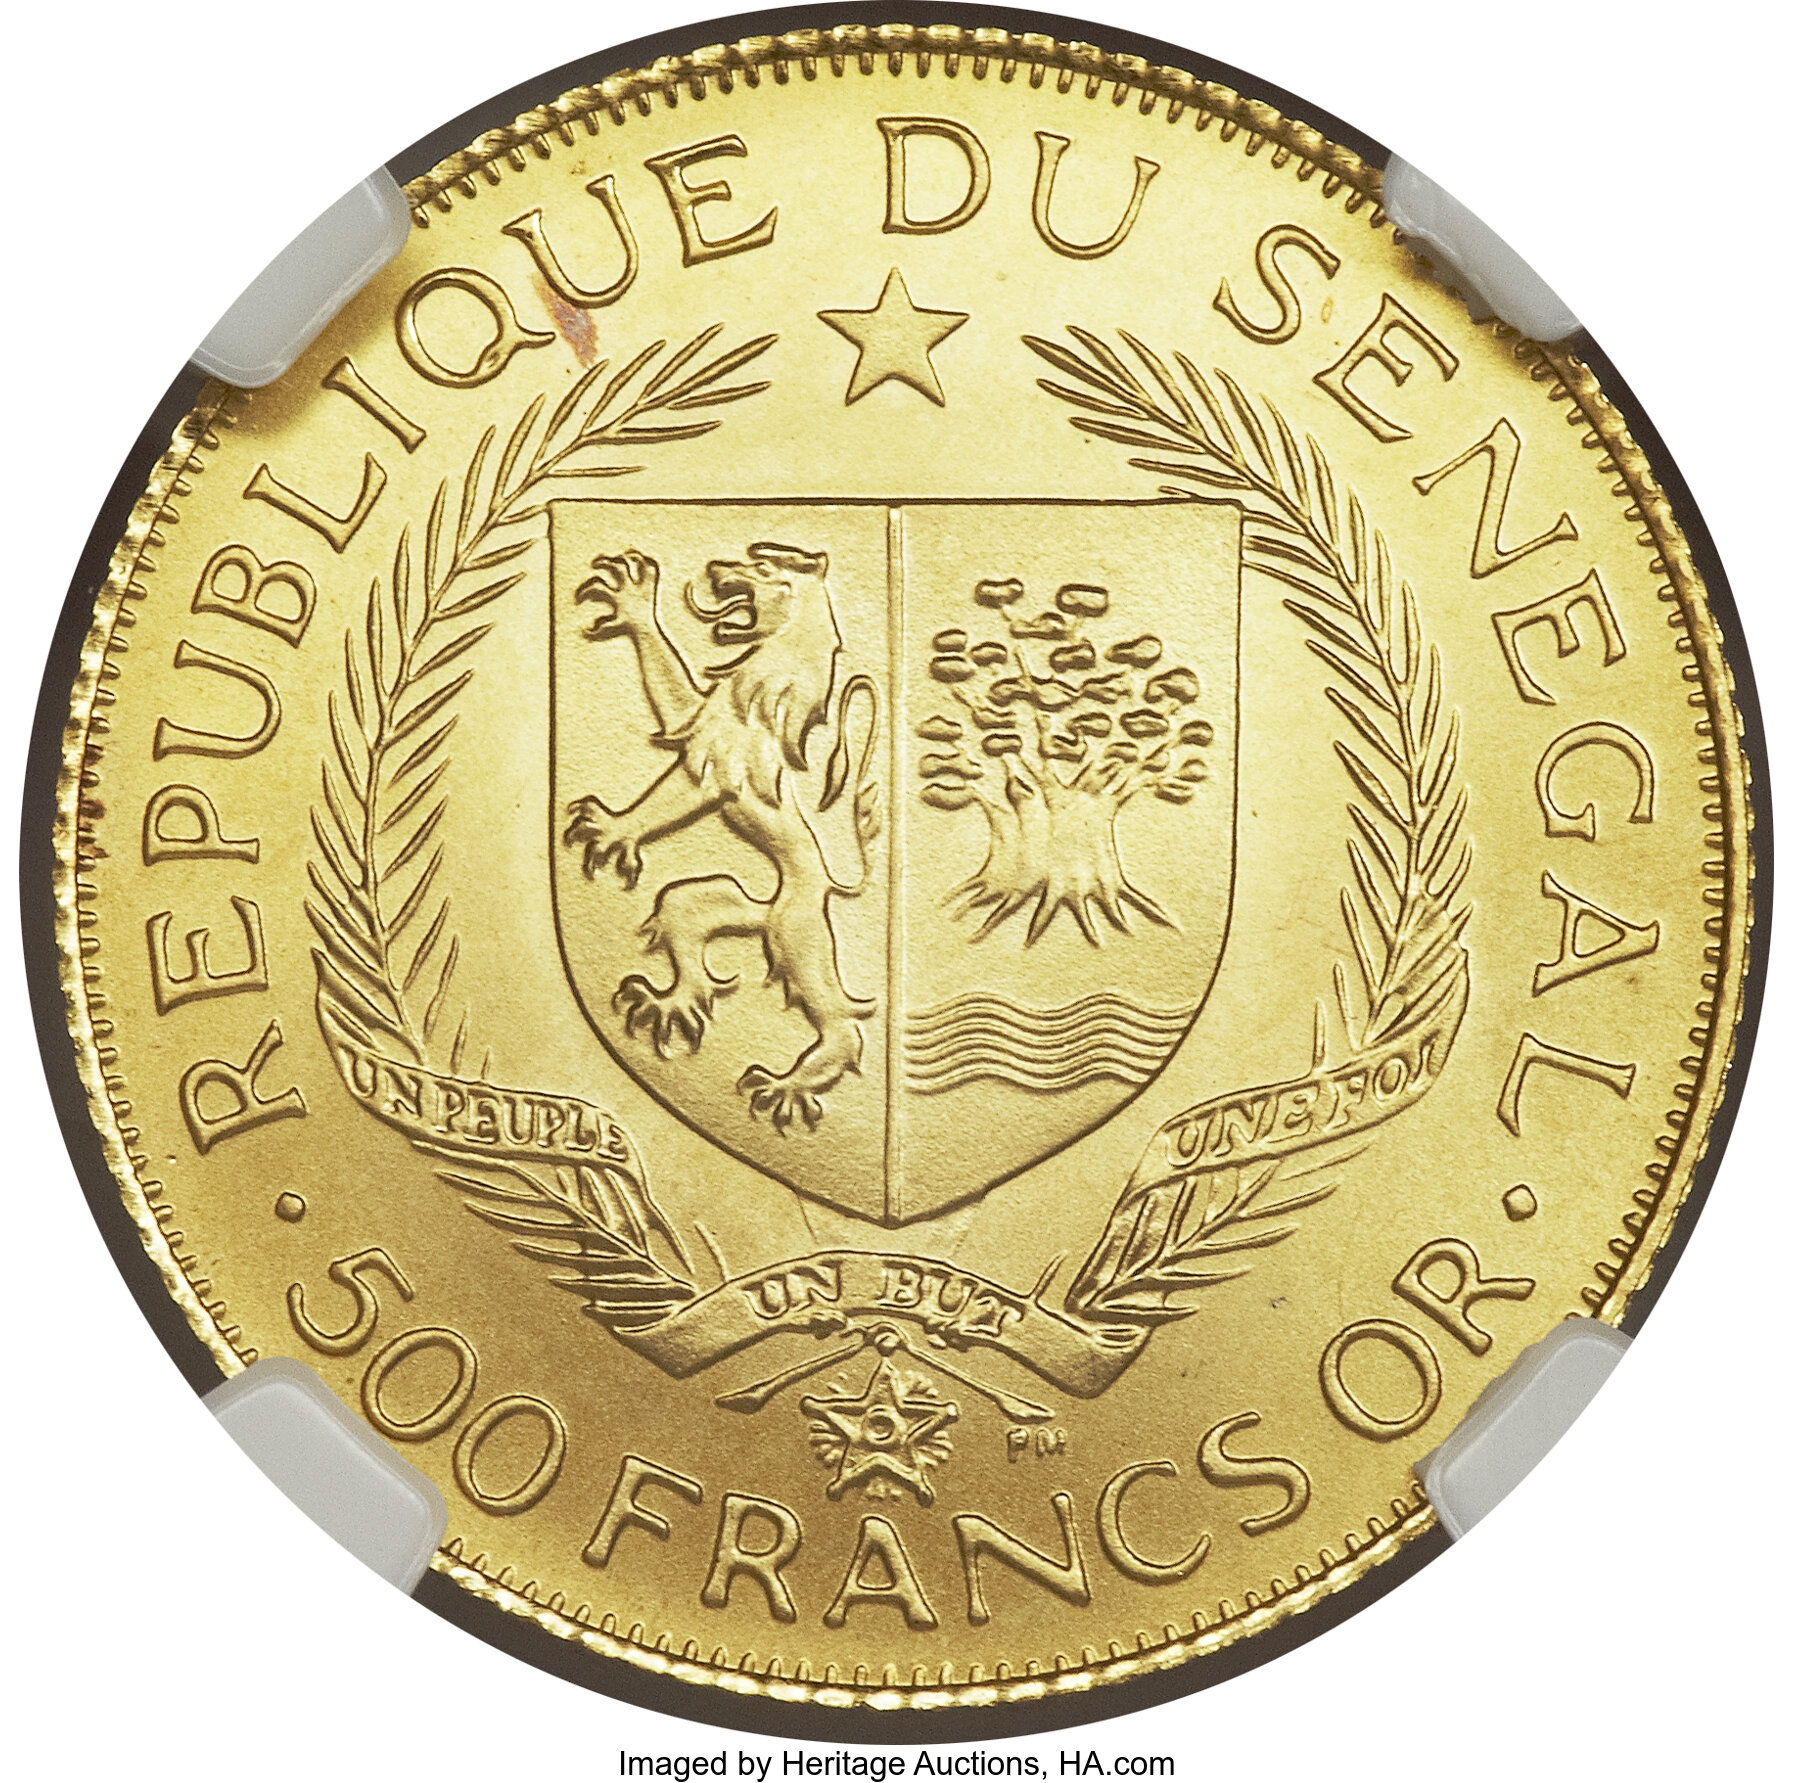 500 francs - Eurafrique - 25 years